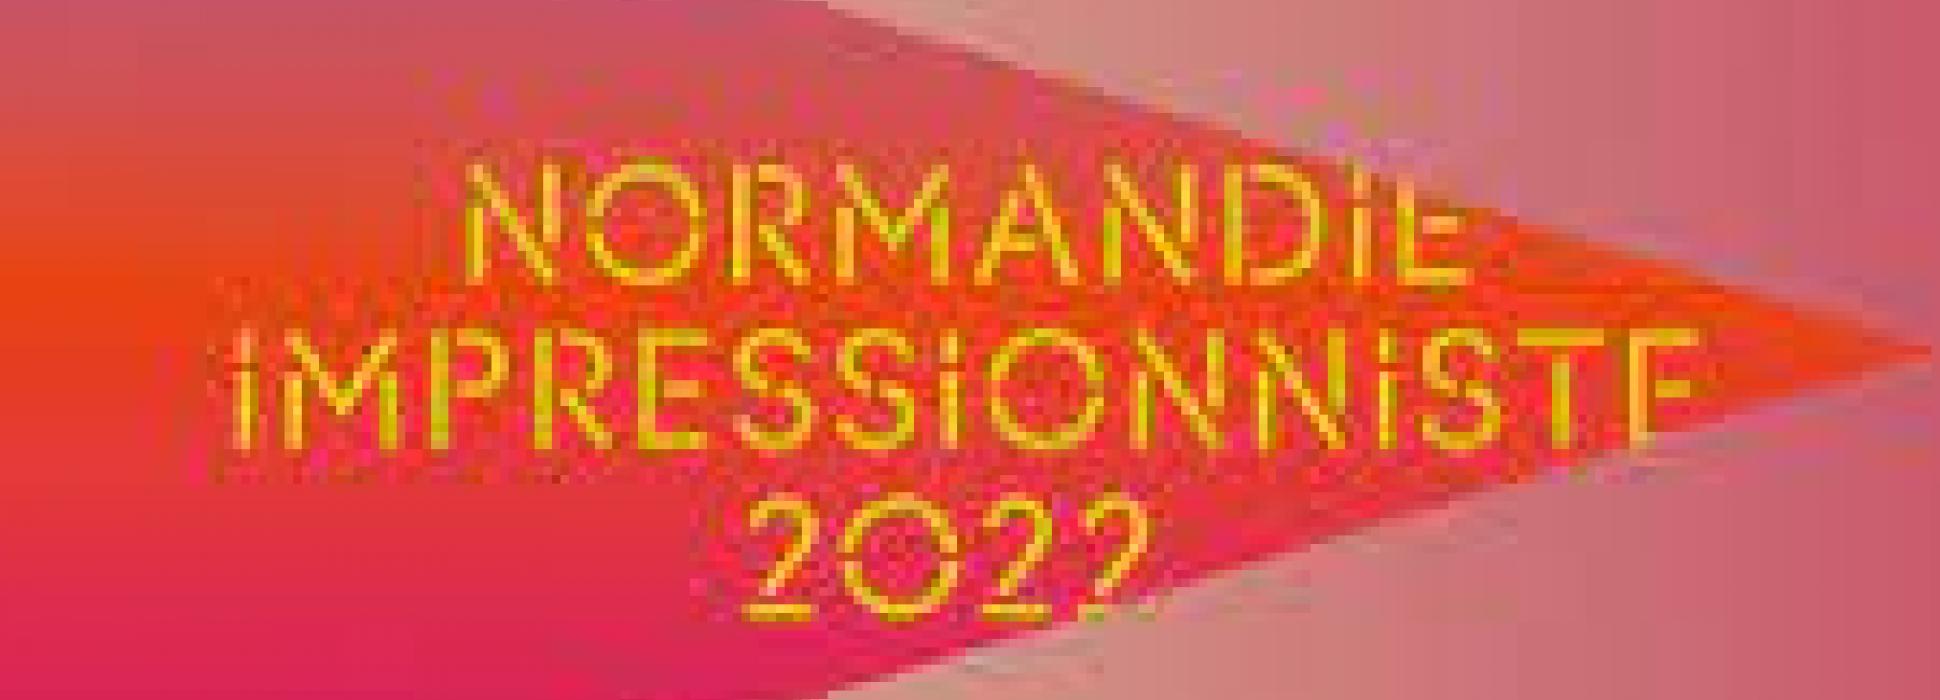 Les nuits Normandie Impressionniste 2022 du 26 au 28 août 2022 célèbre l’art sous toutes ses formes